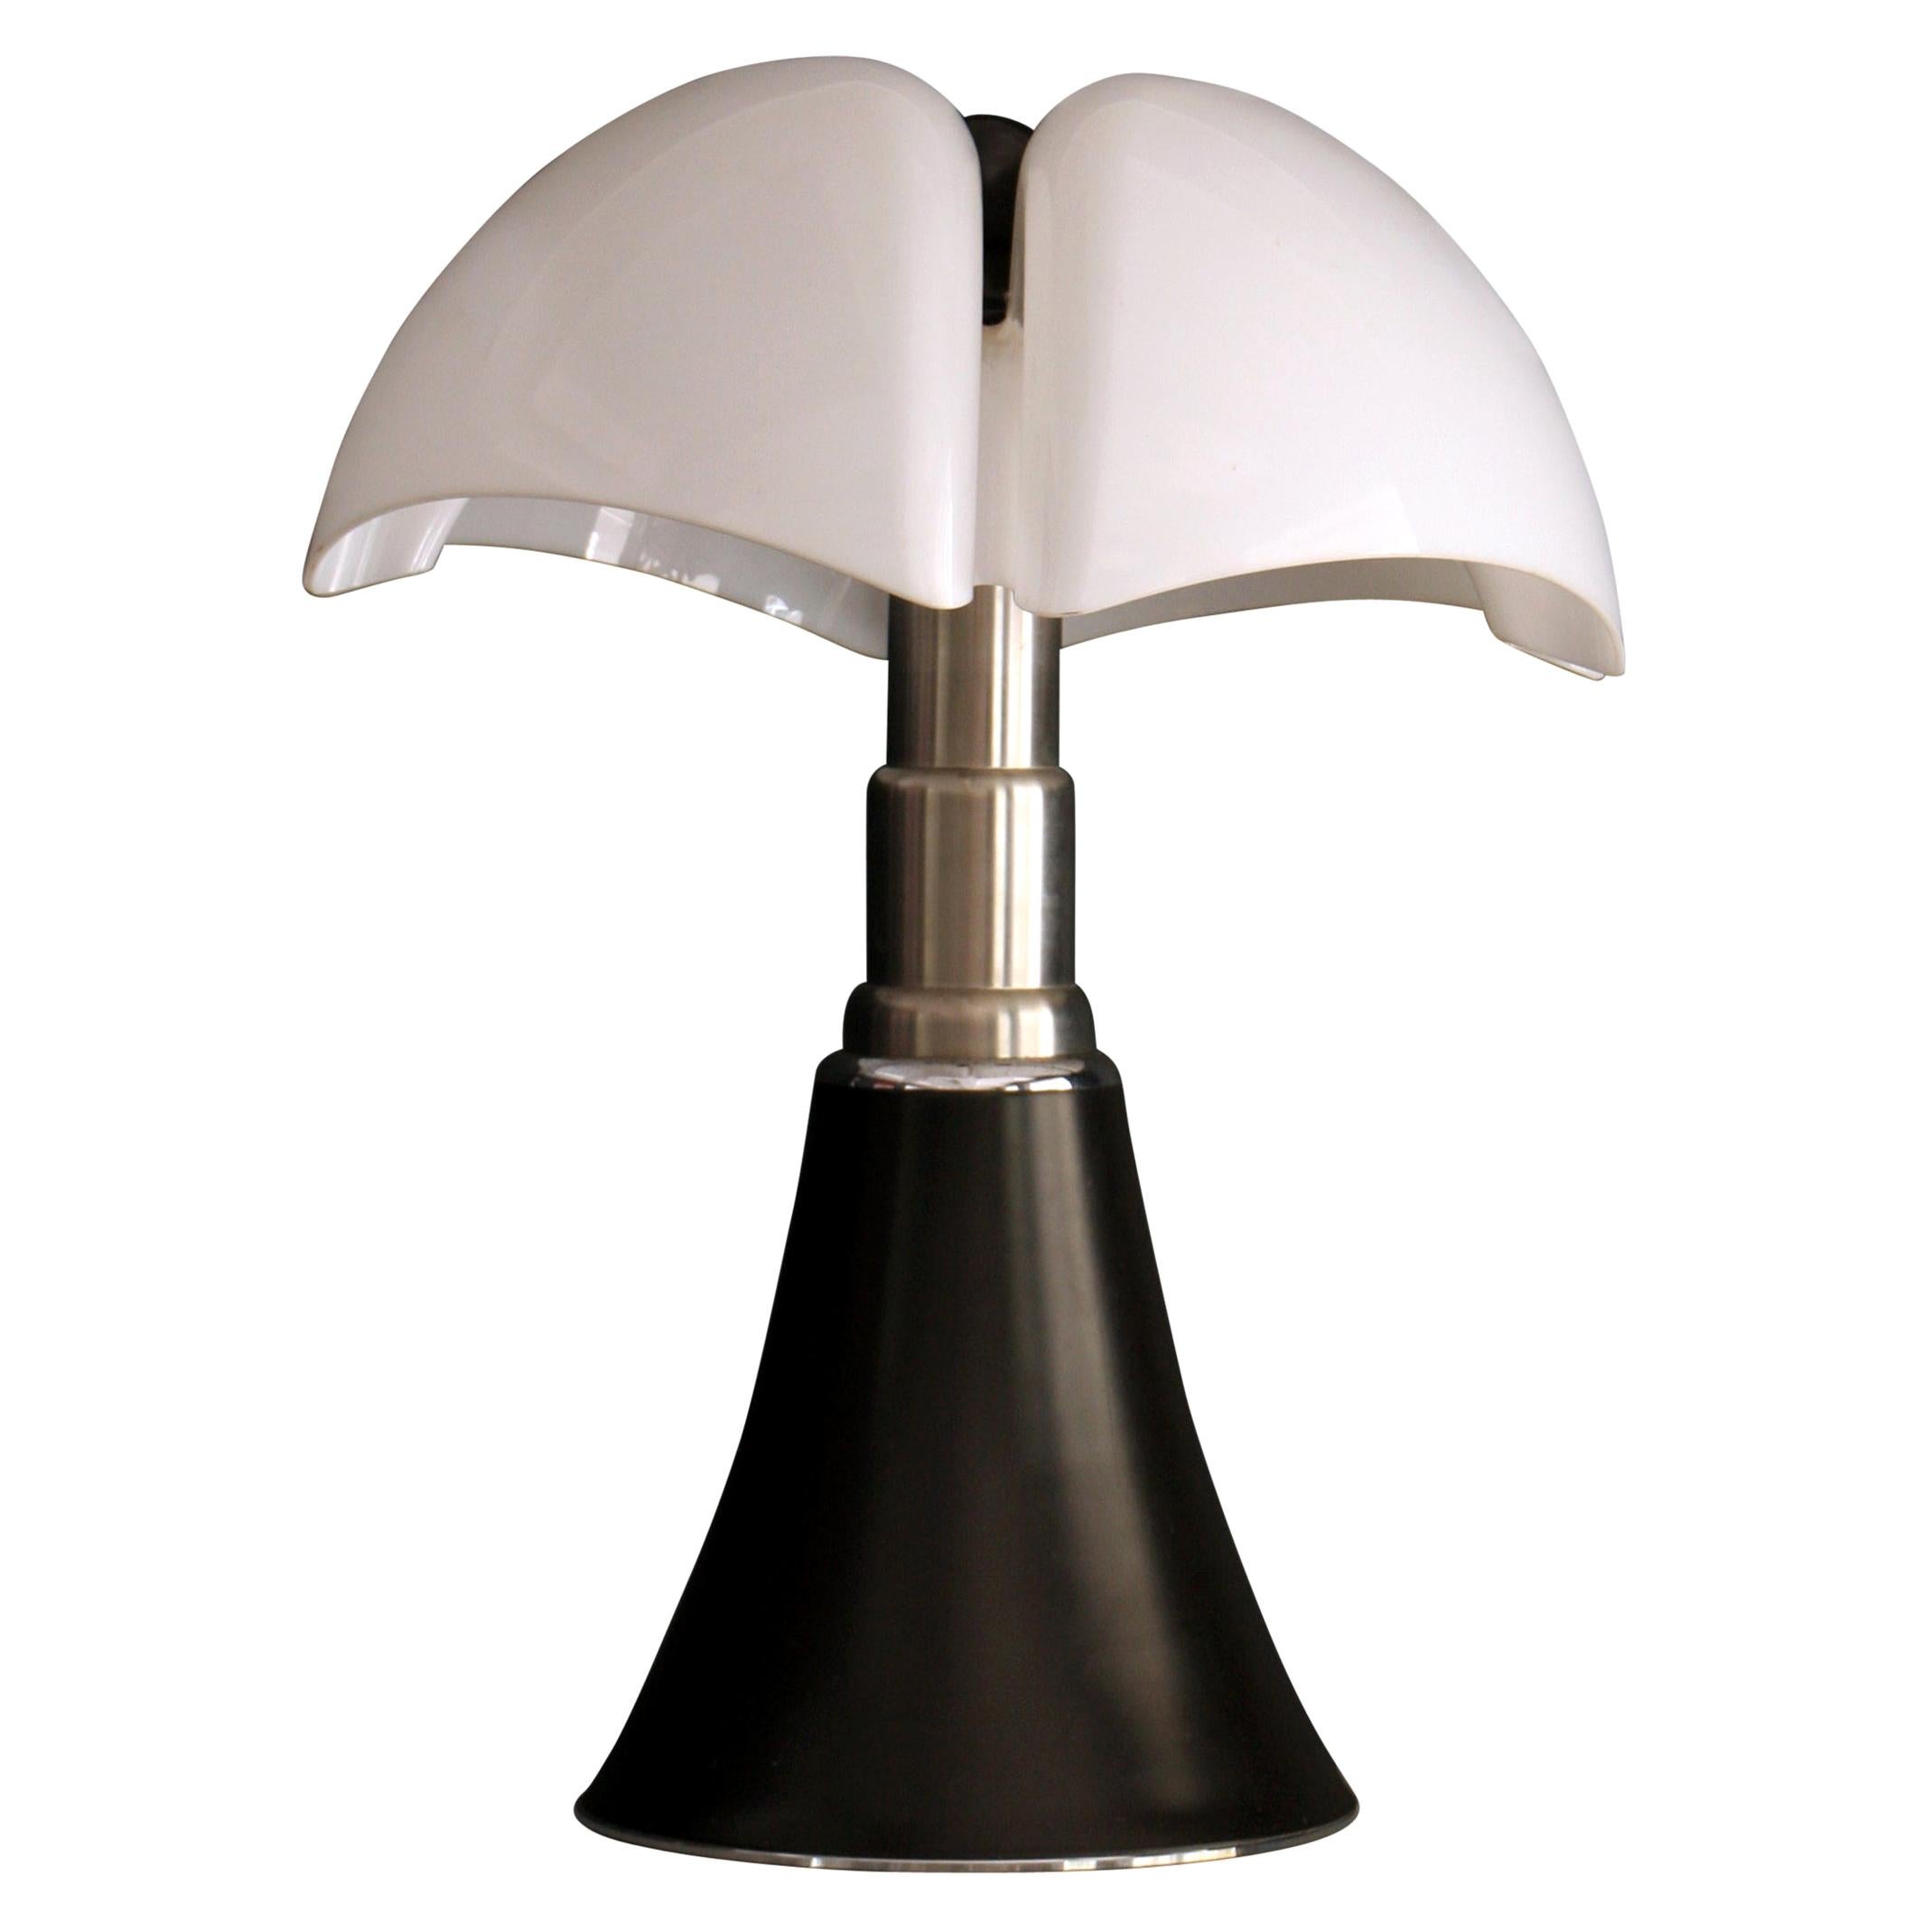 1980s Gae Aulenti "Pipistrello" Table Lamp for Martinelli Luce